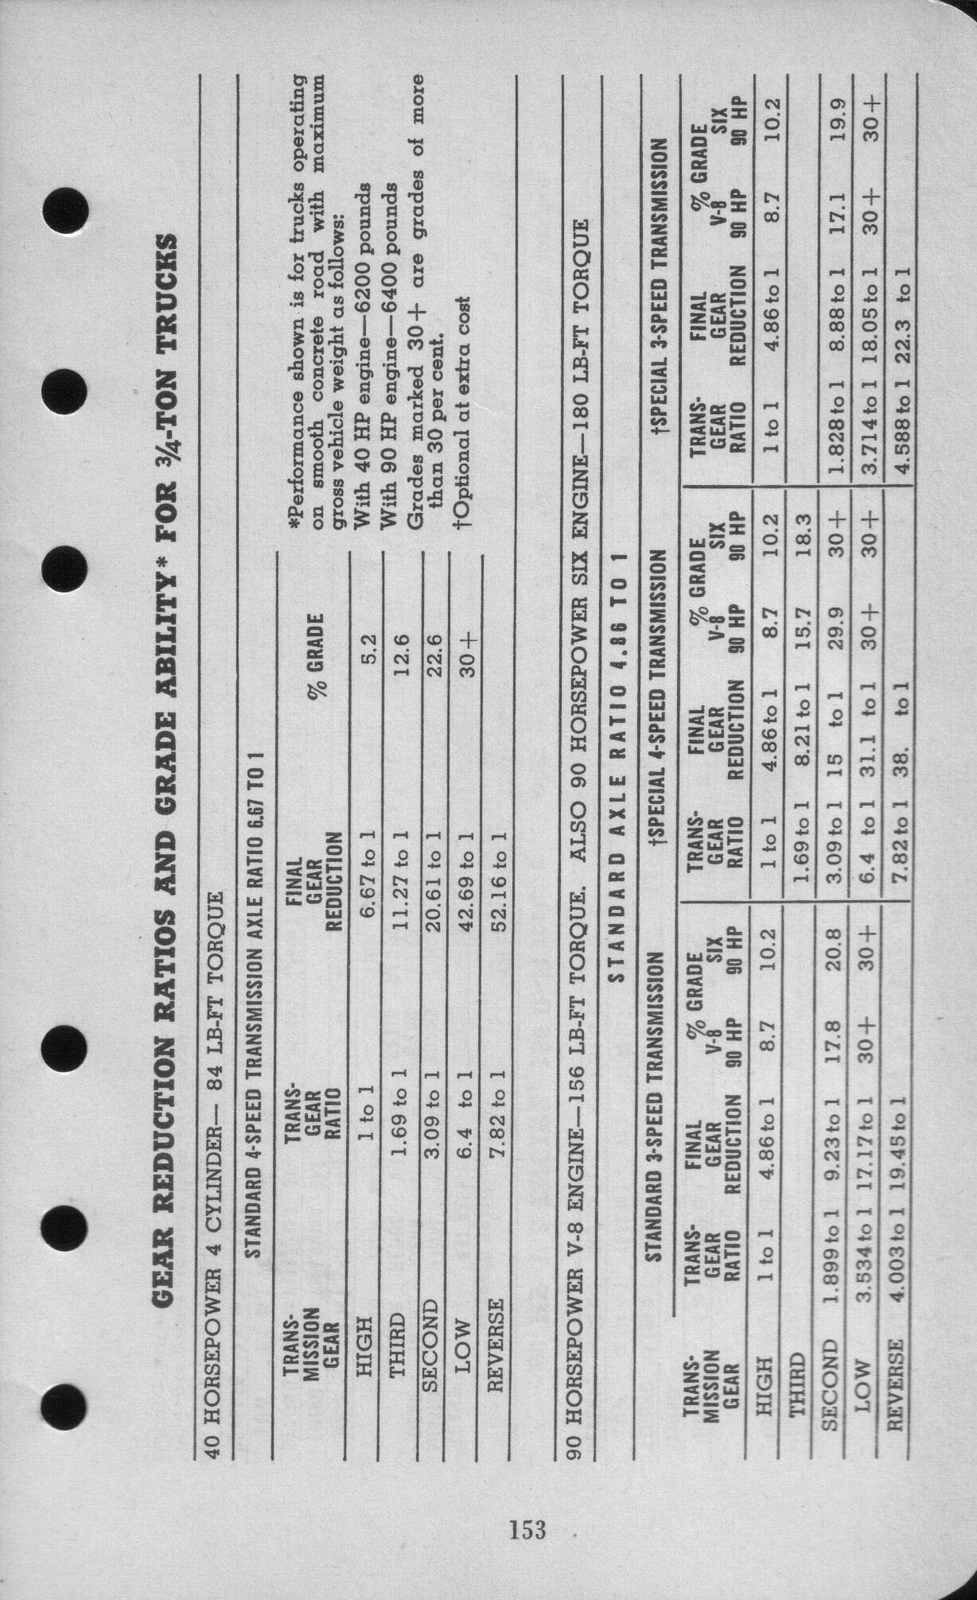 n_1942 Ford Salesmans Reference Manual-153.jpg